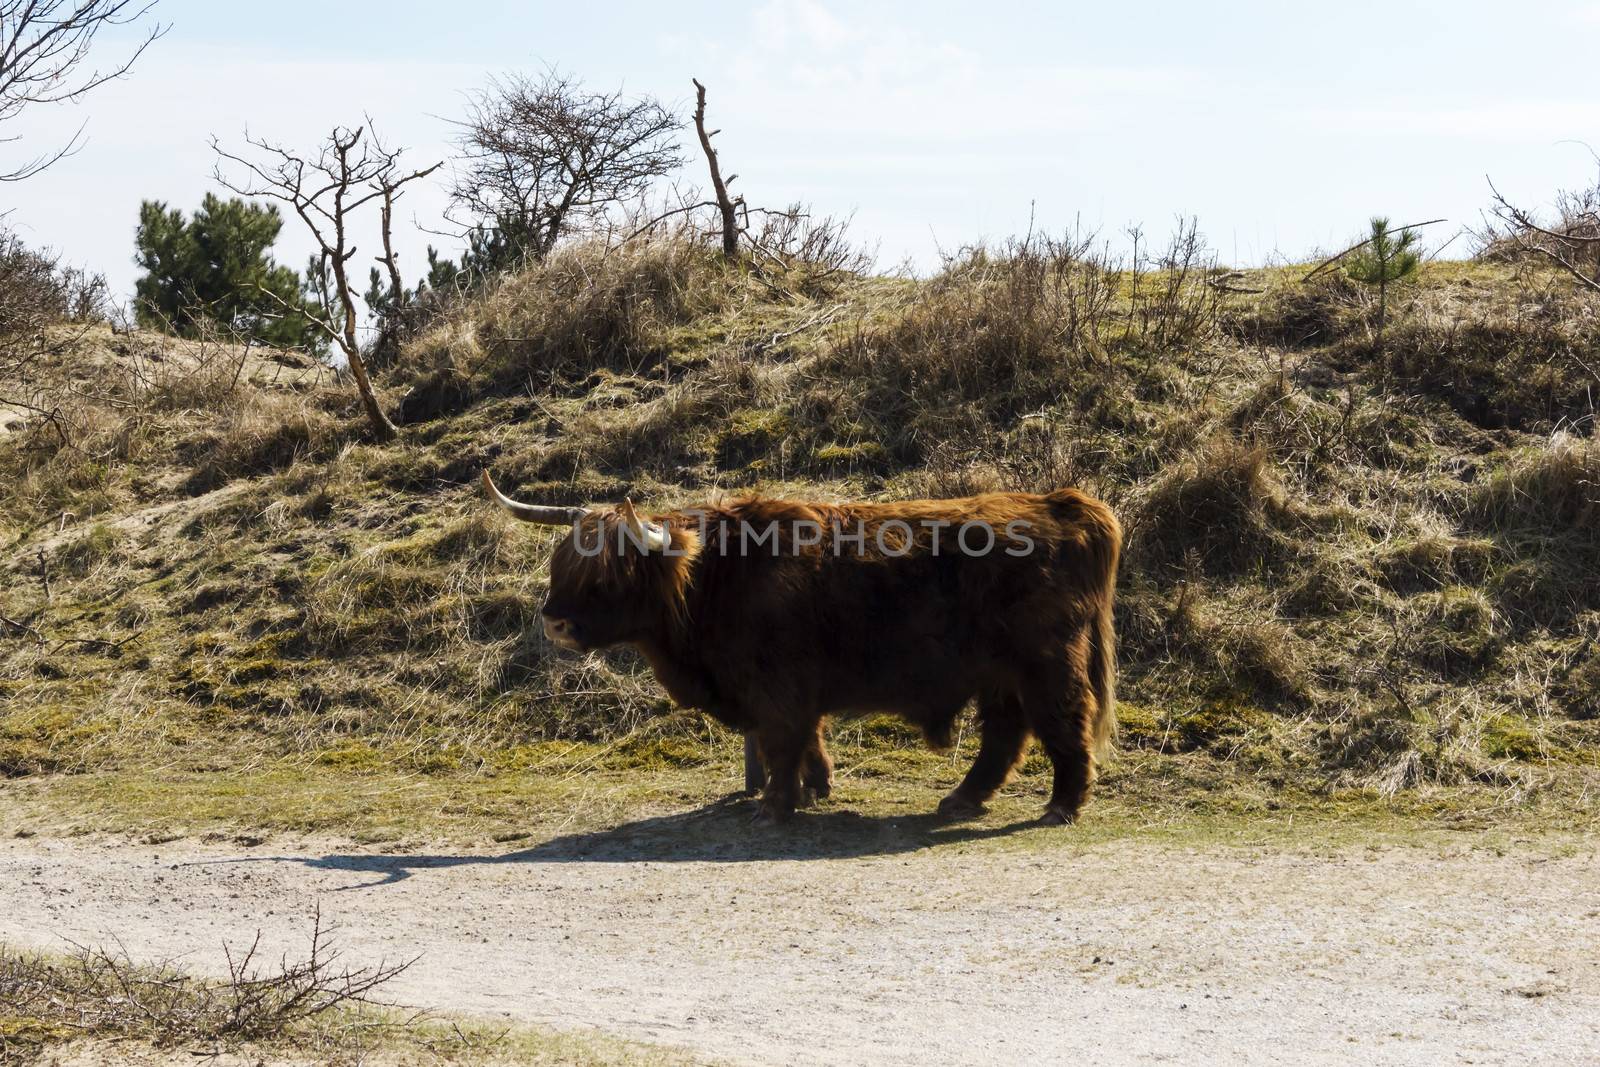 Cattle scottish Highlanders, Zuid Kennemerland, Netherlands